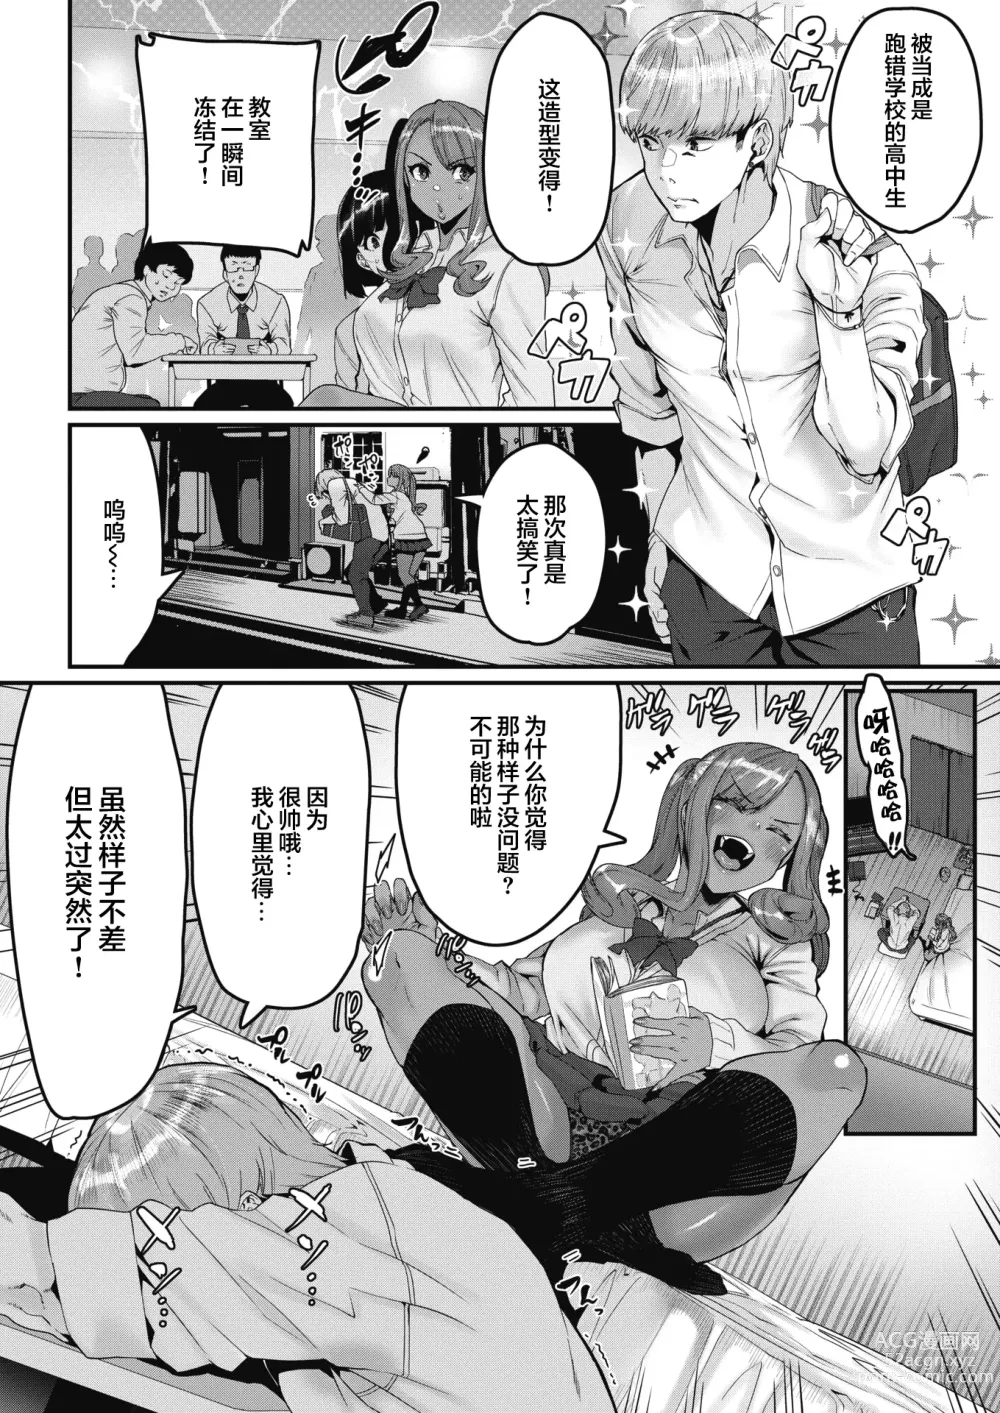 Page 4 of manga Moteasobareteiru!? (decensored)